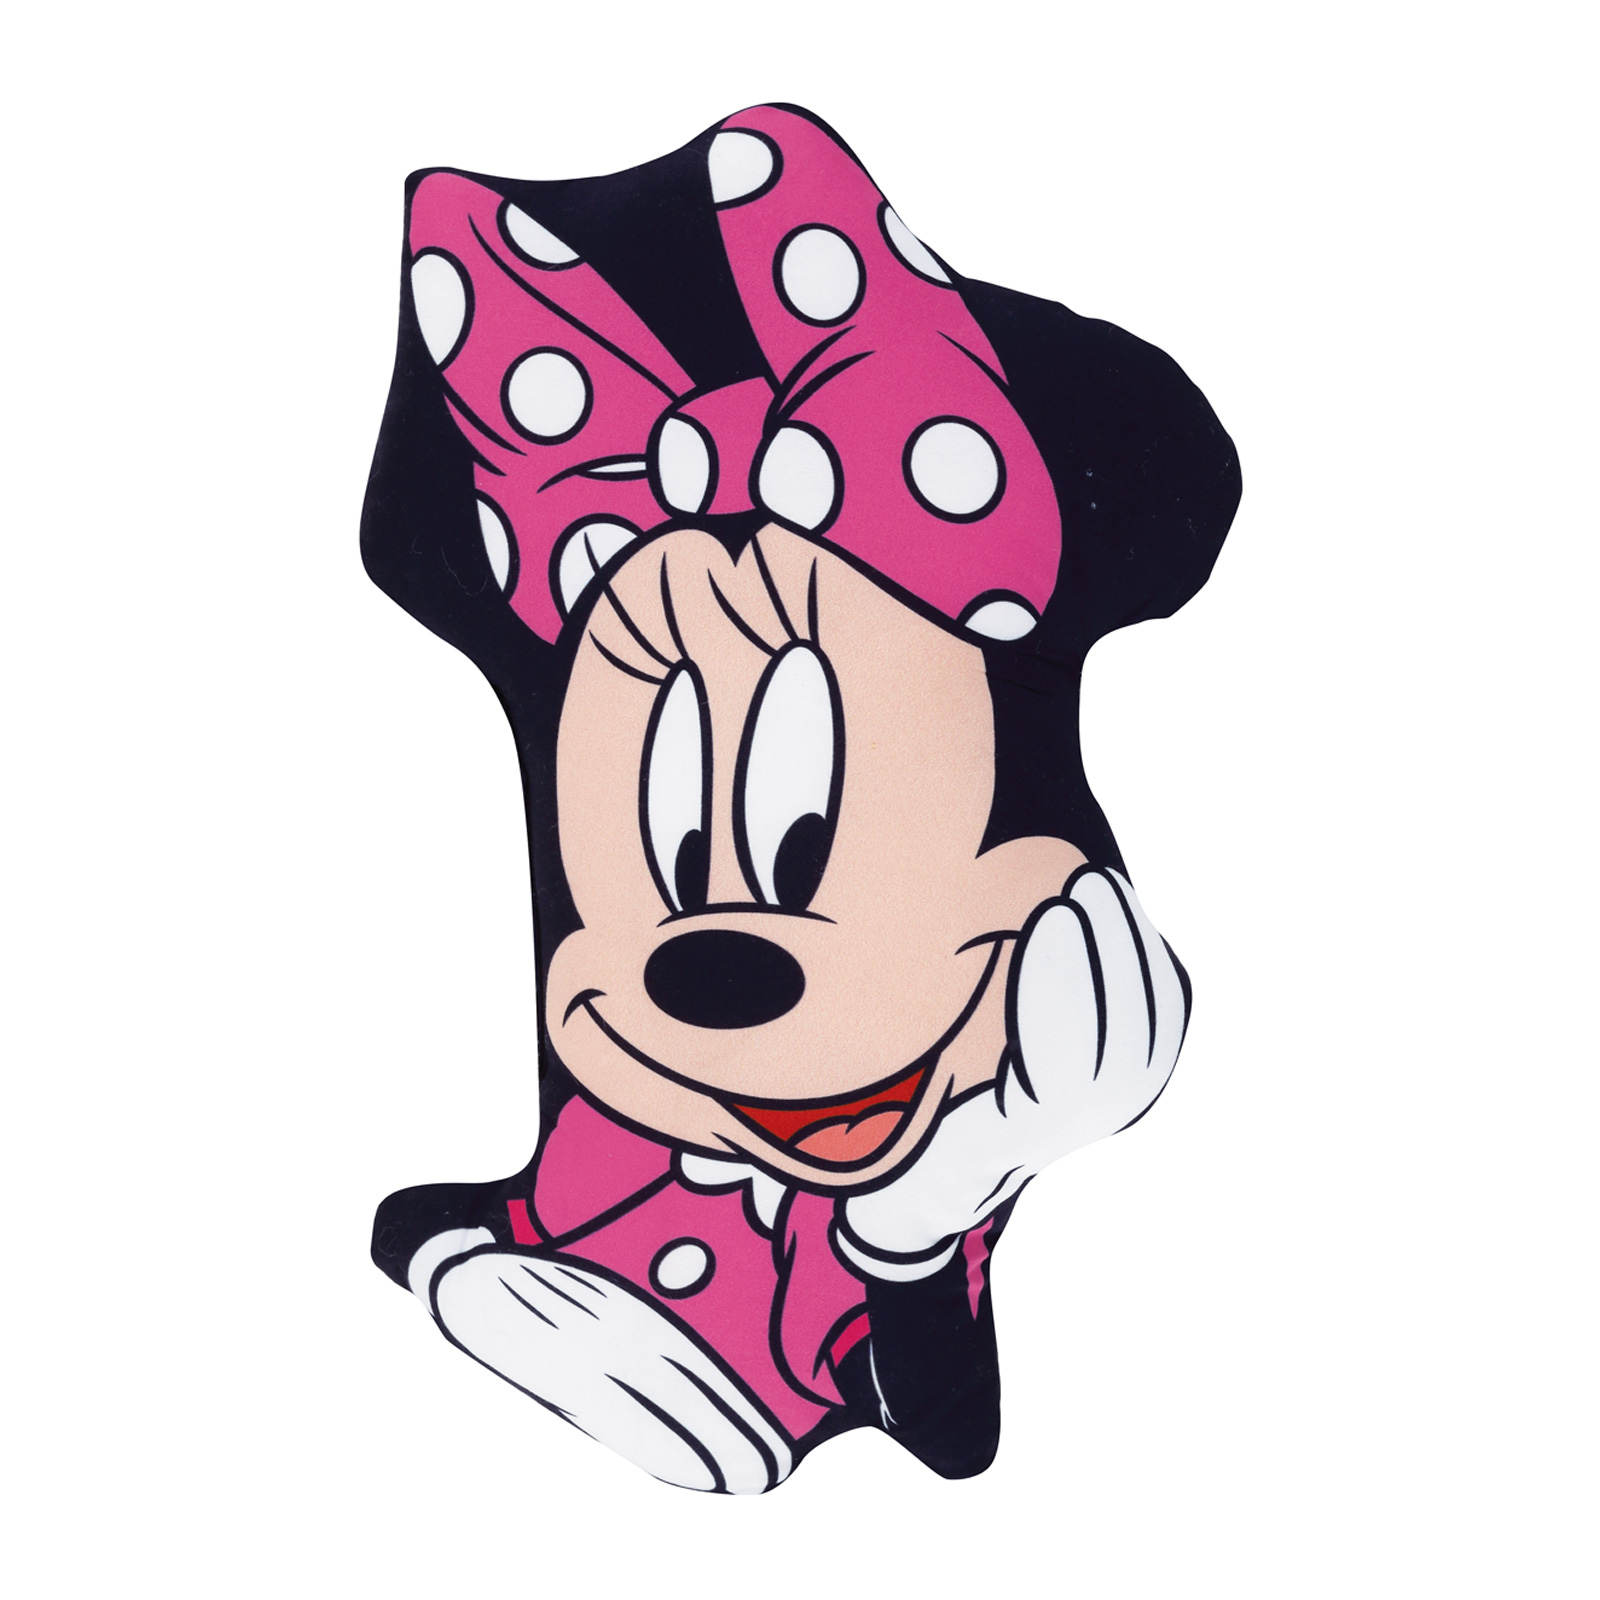 Μαξιλάρι Διακοσμητικό Microfiber 34x23εκ. Minnie 5508 Disney (Ύφασμα: Microfiber, Χρώμα: Ροζ) - Disney - 533342305508 149018